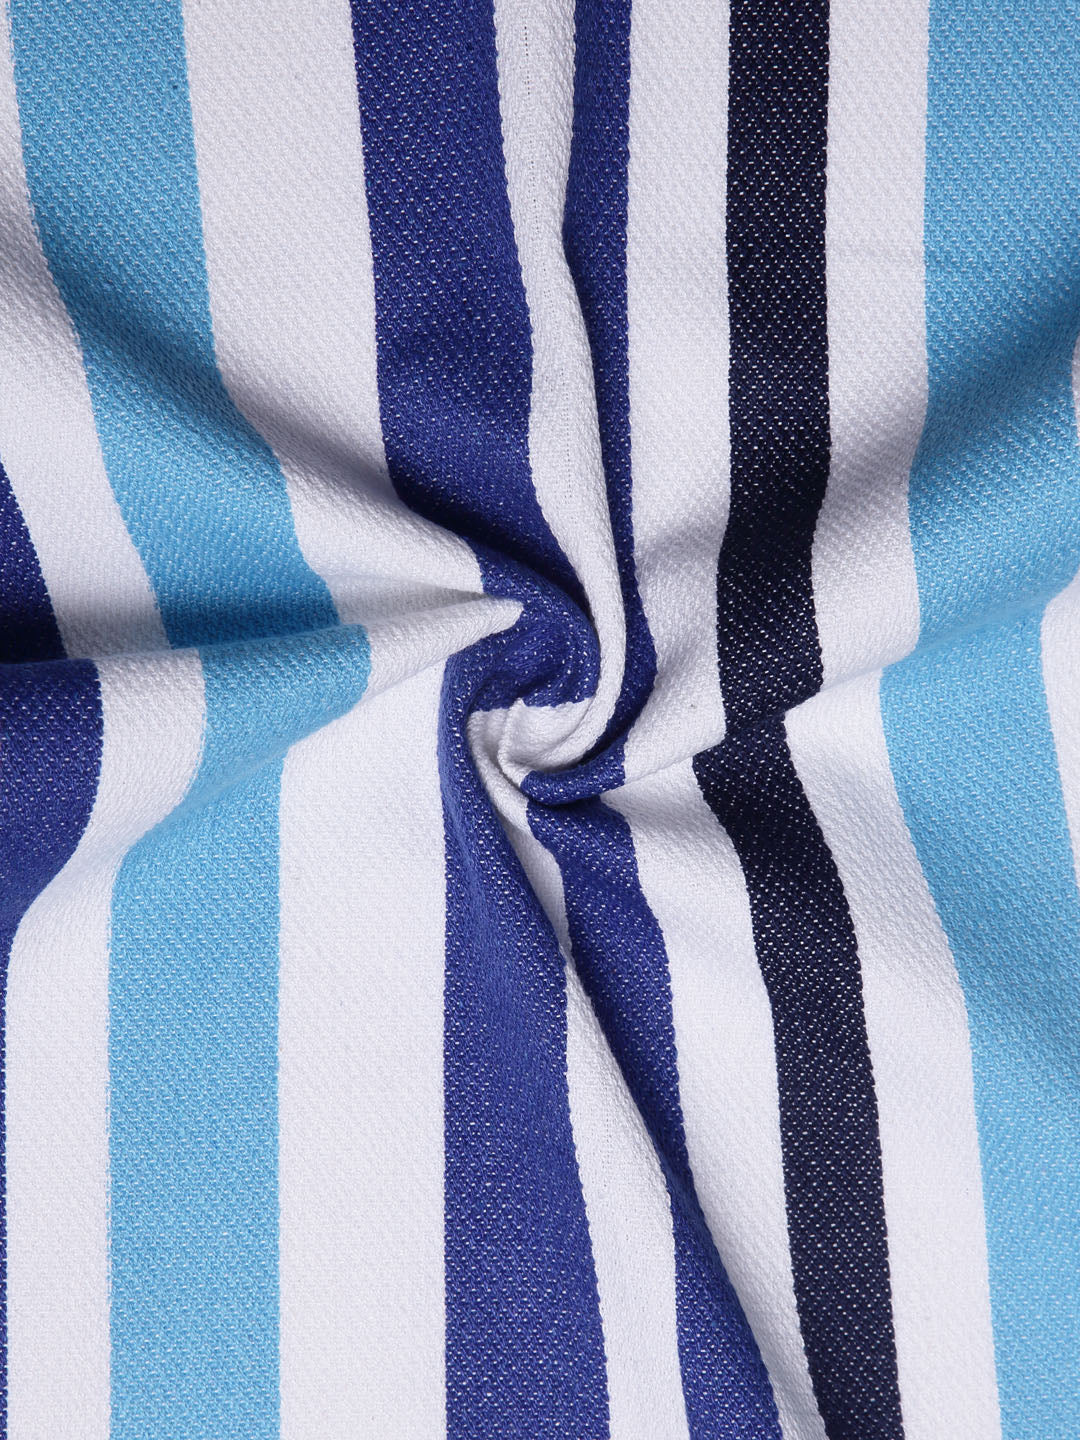 Arrabi Multi Stripes Handwoven Cotton Hand Towel (Set of 5) (85 X 35 cm)